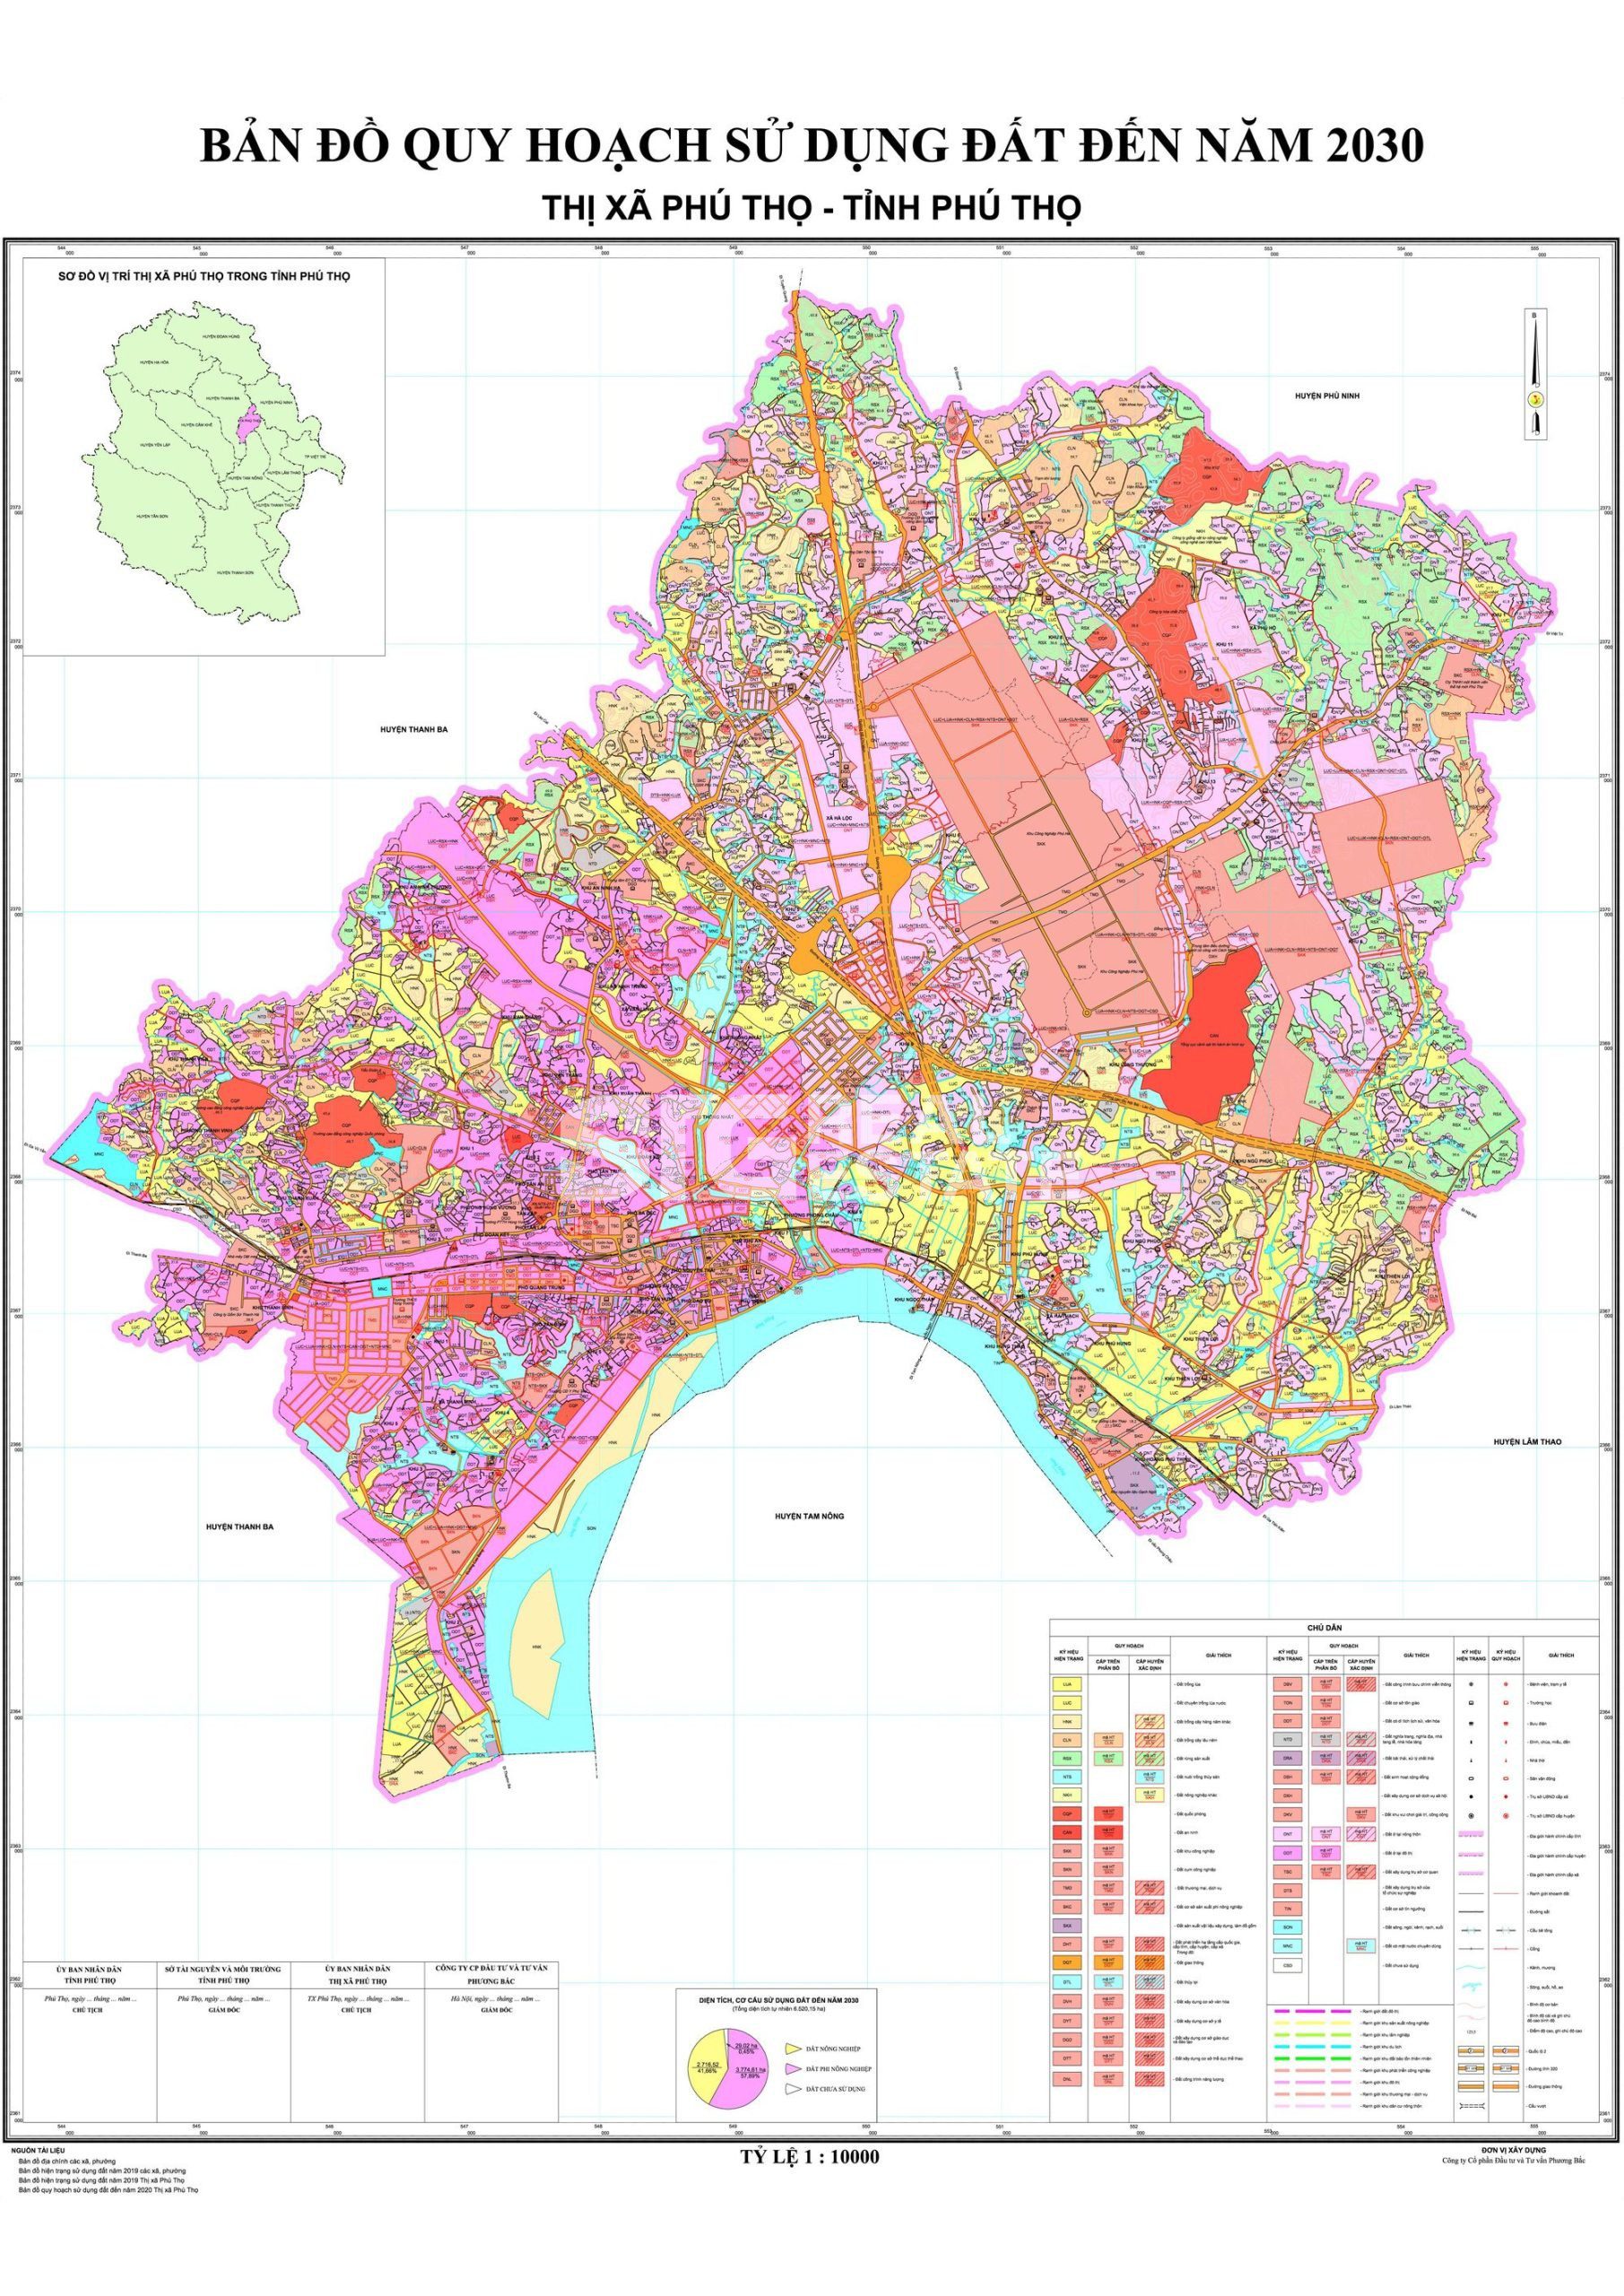 Bản đồ quy hoạch tỉnh Phú Thọ chi tiết năm 2022 sẽ đem đến những cơ hội đầu tư mới cho bạn. Nơi đây đang trở thành trung tâm kinh tế, văn hóa lớn của miền núi phía Bắc, với nền kinh tế đa dạng và cơ sở hạ tầng phát triển theo tiêu chuẩn quốc tế.